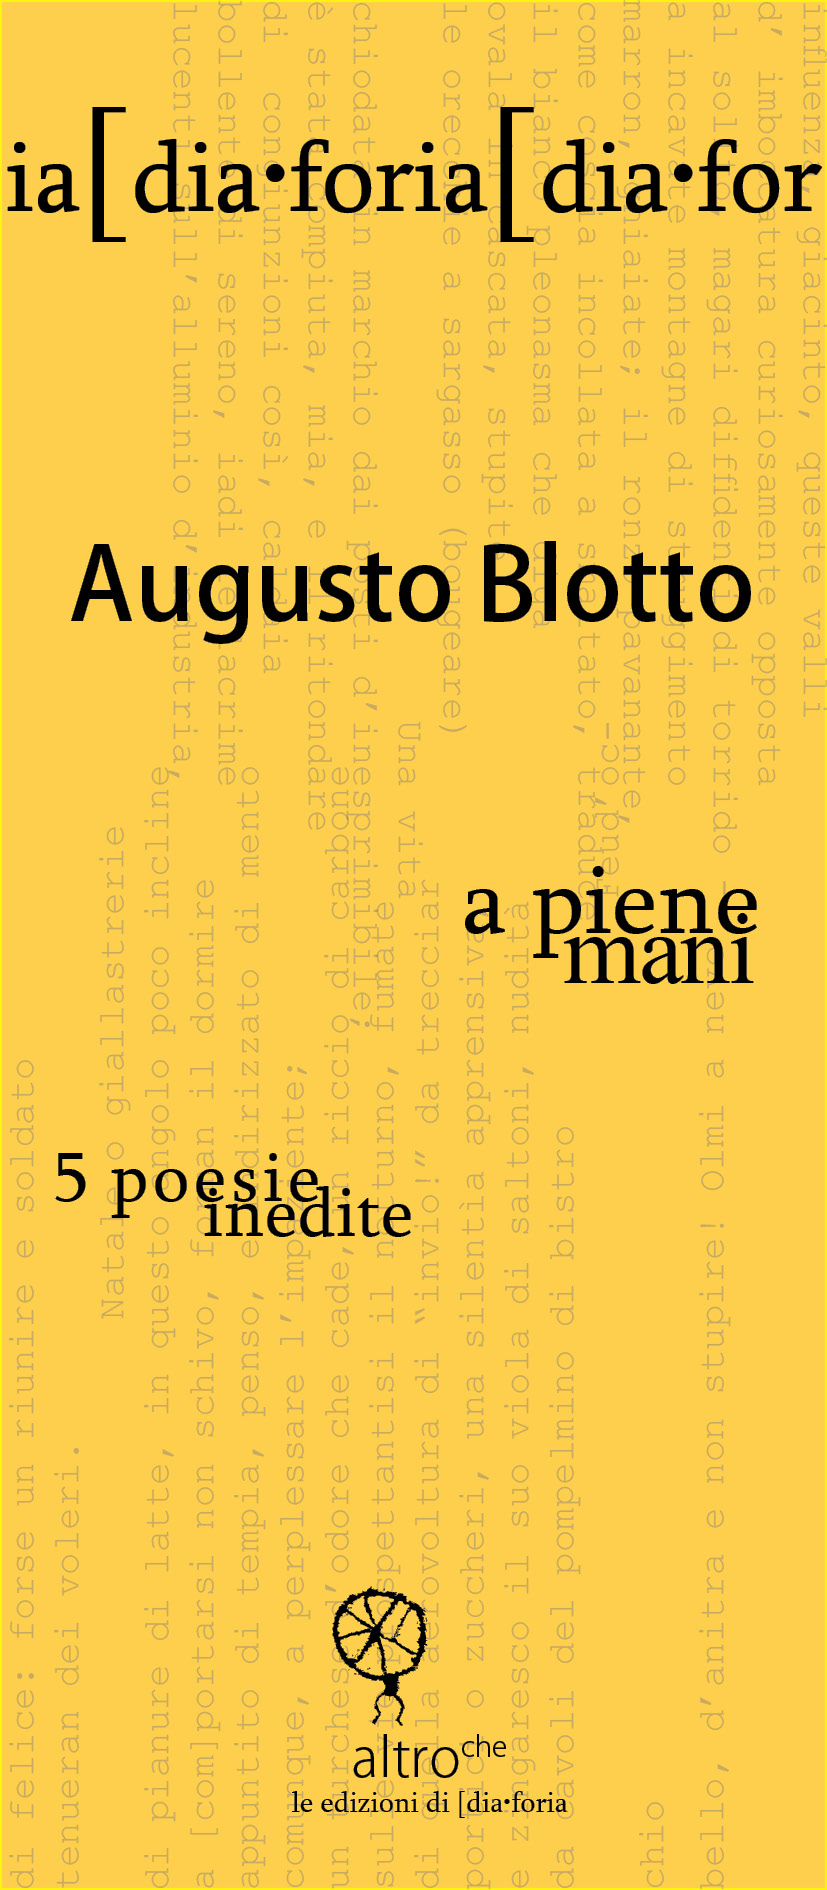 [dia•foria #7 – Augusto Blotto